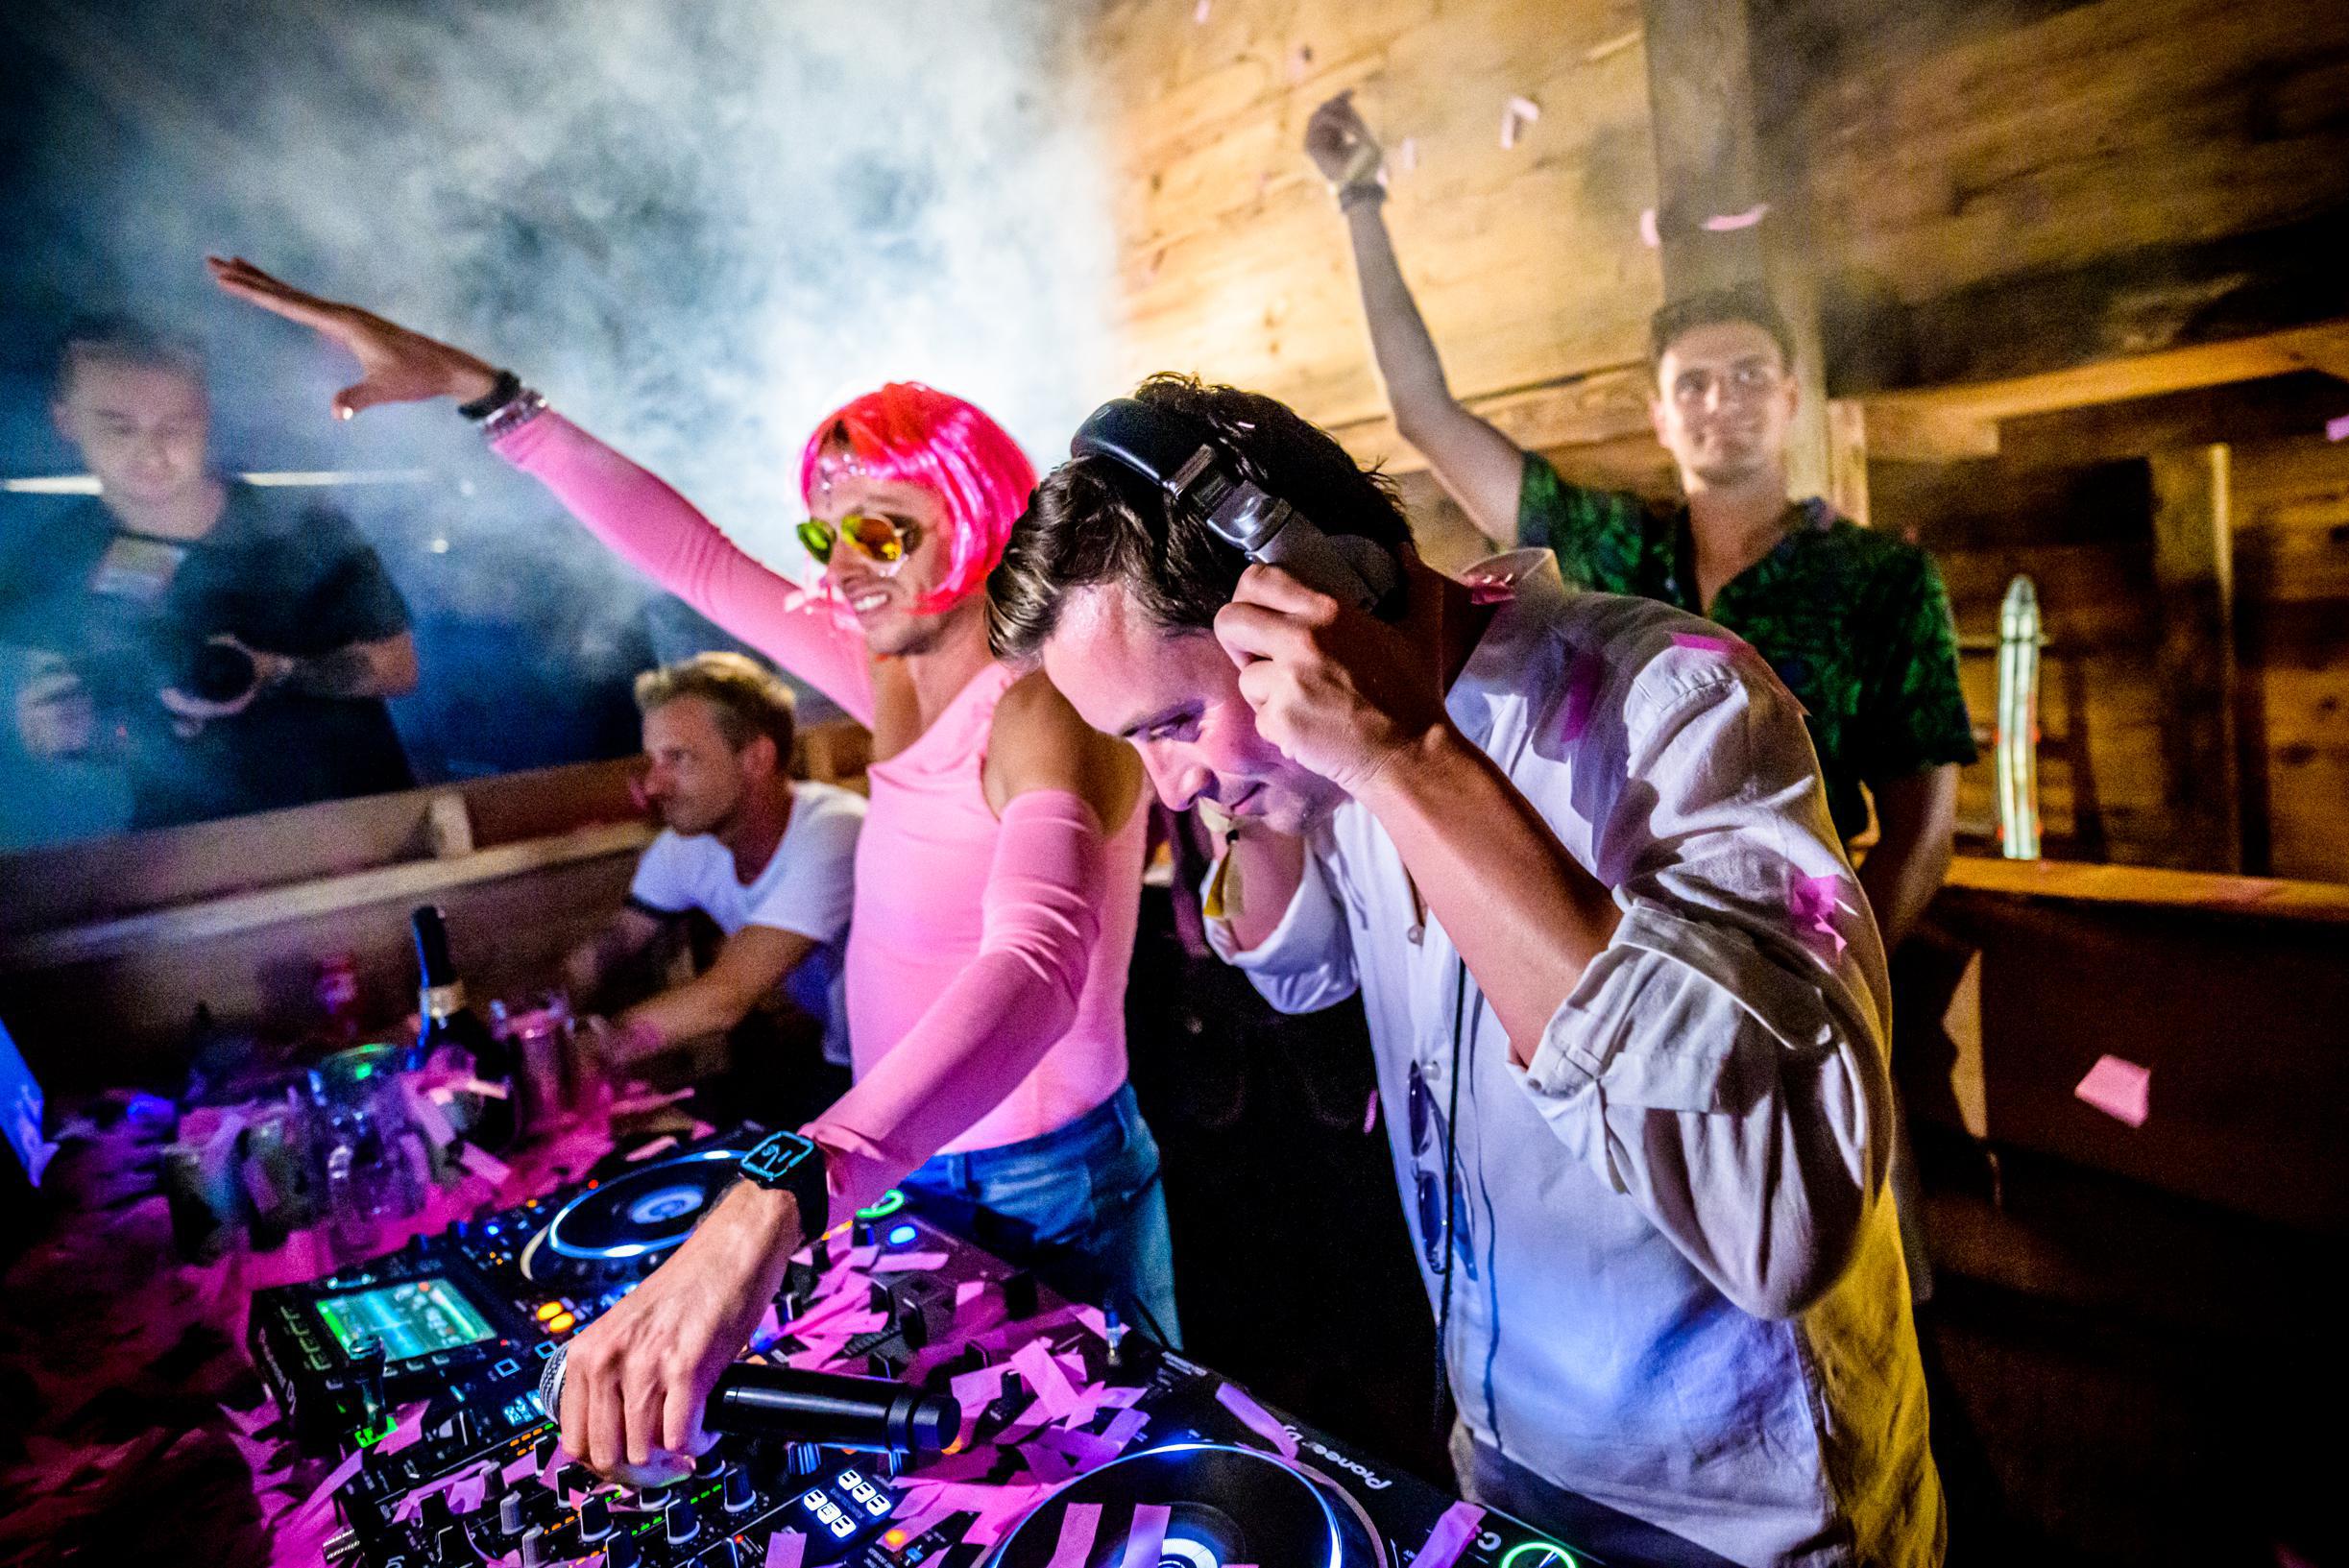 Сюрприз в Tomorrowland: Нильс Дестадсбадер, Коннер и Яни ползут на сцену с Реги (Бум) в костюме